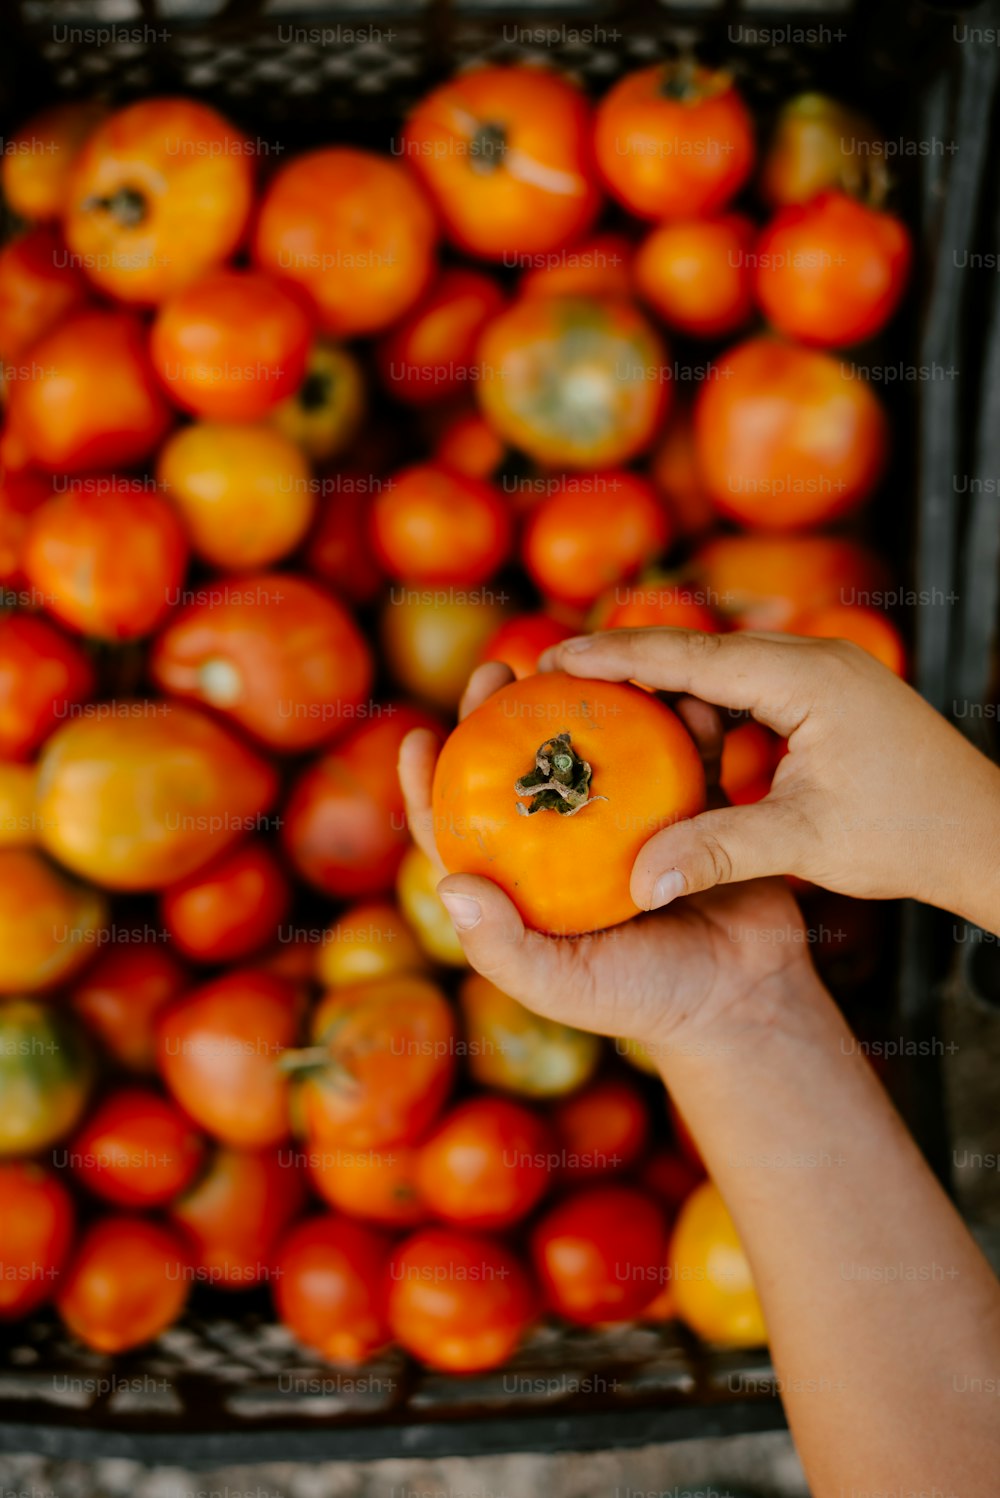 Una persona sosteniendo una naranja frente a una pila de naranjas